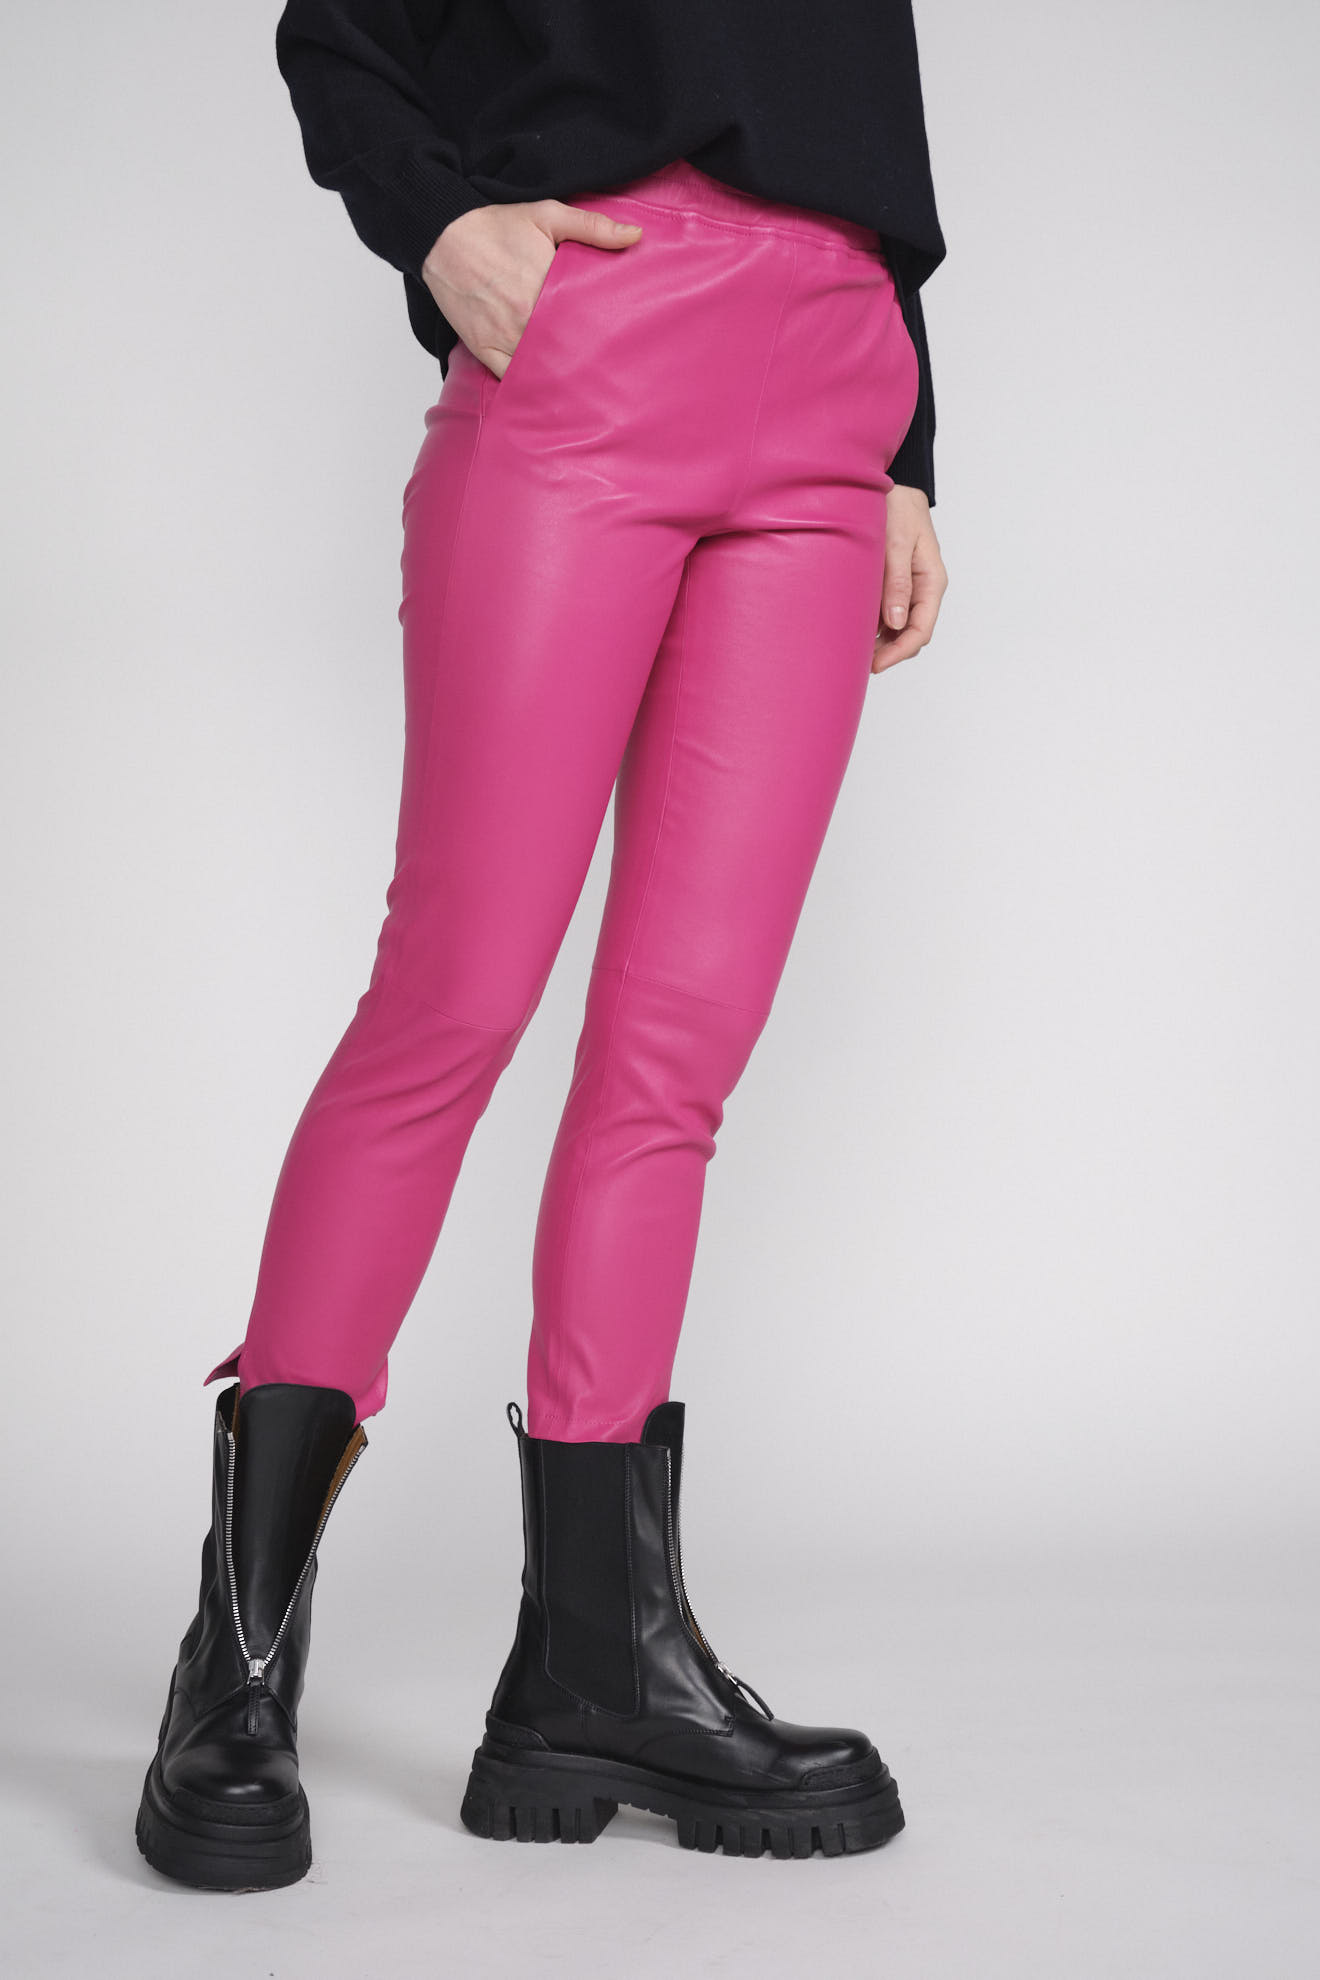 Arma Provence - Pantalones de corte bootcut en piel de cordero rosa 38